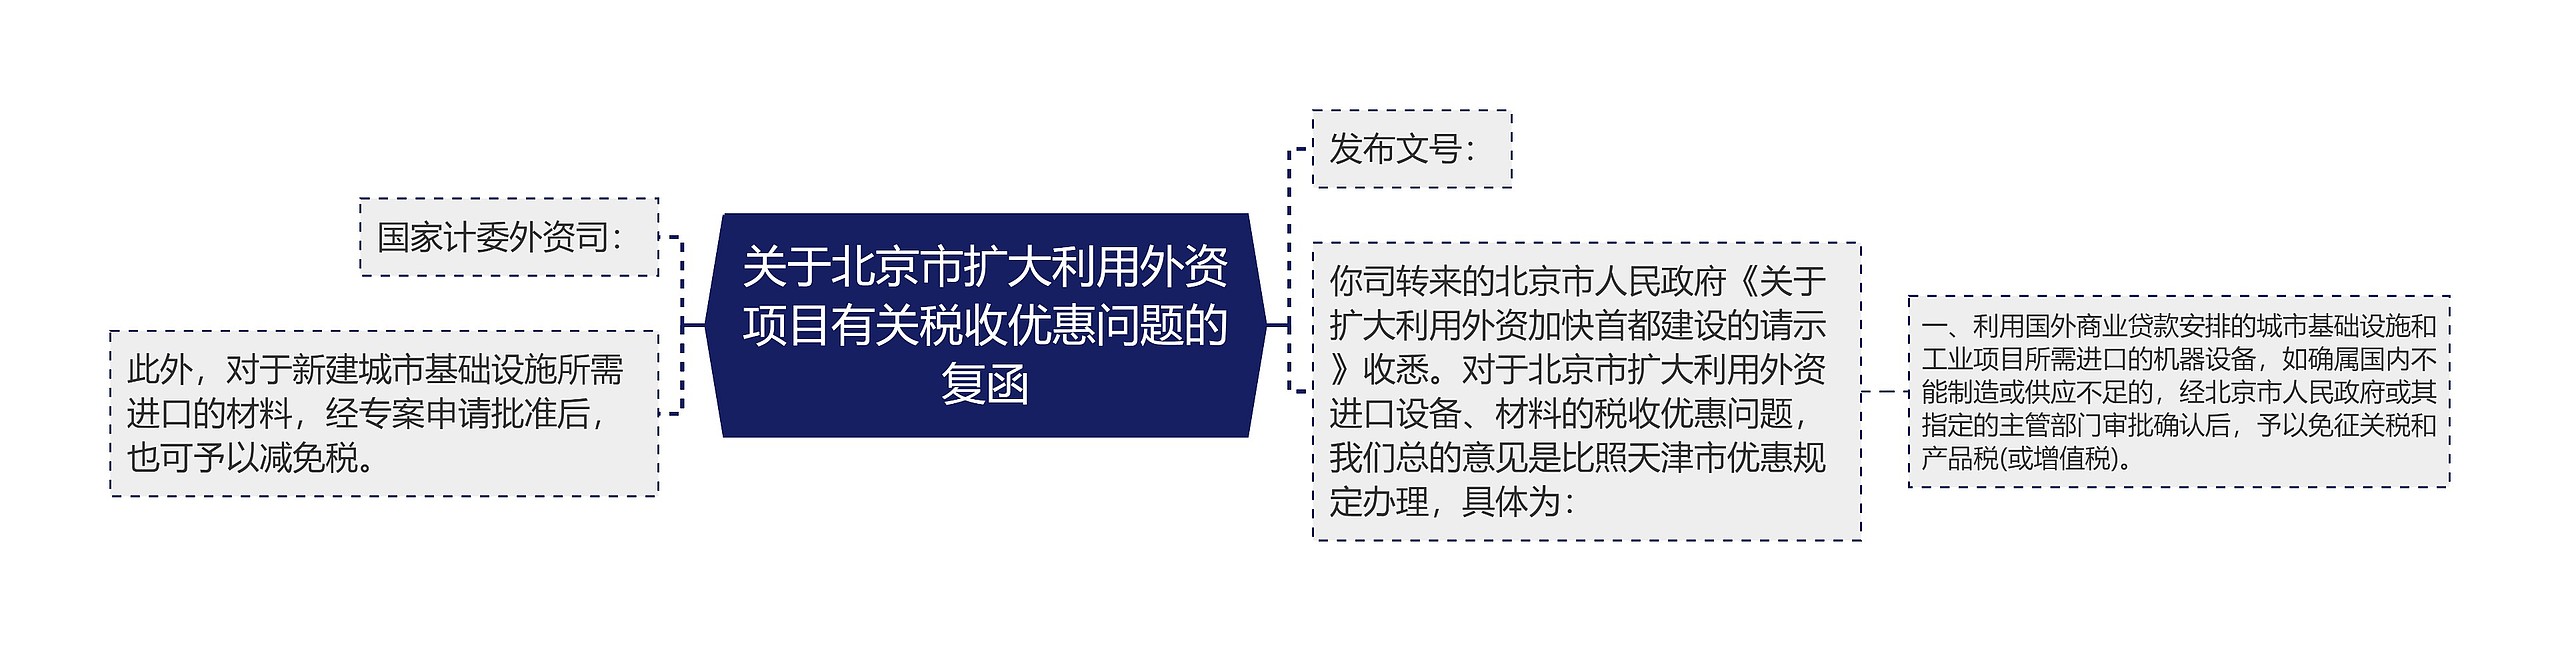 关于北京市扩大利用外资项目有关税收优惠问题的复函